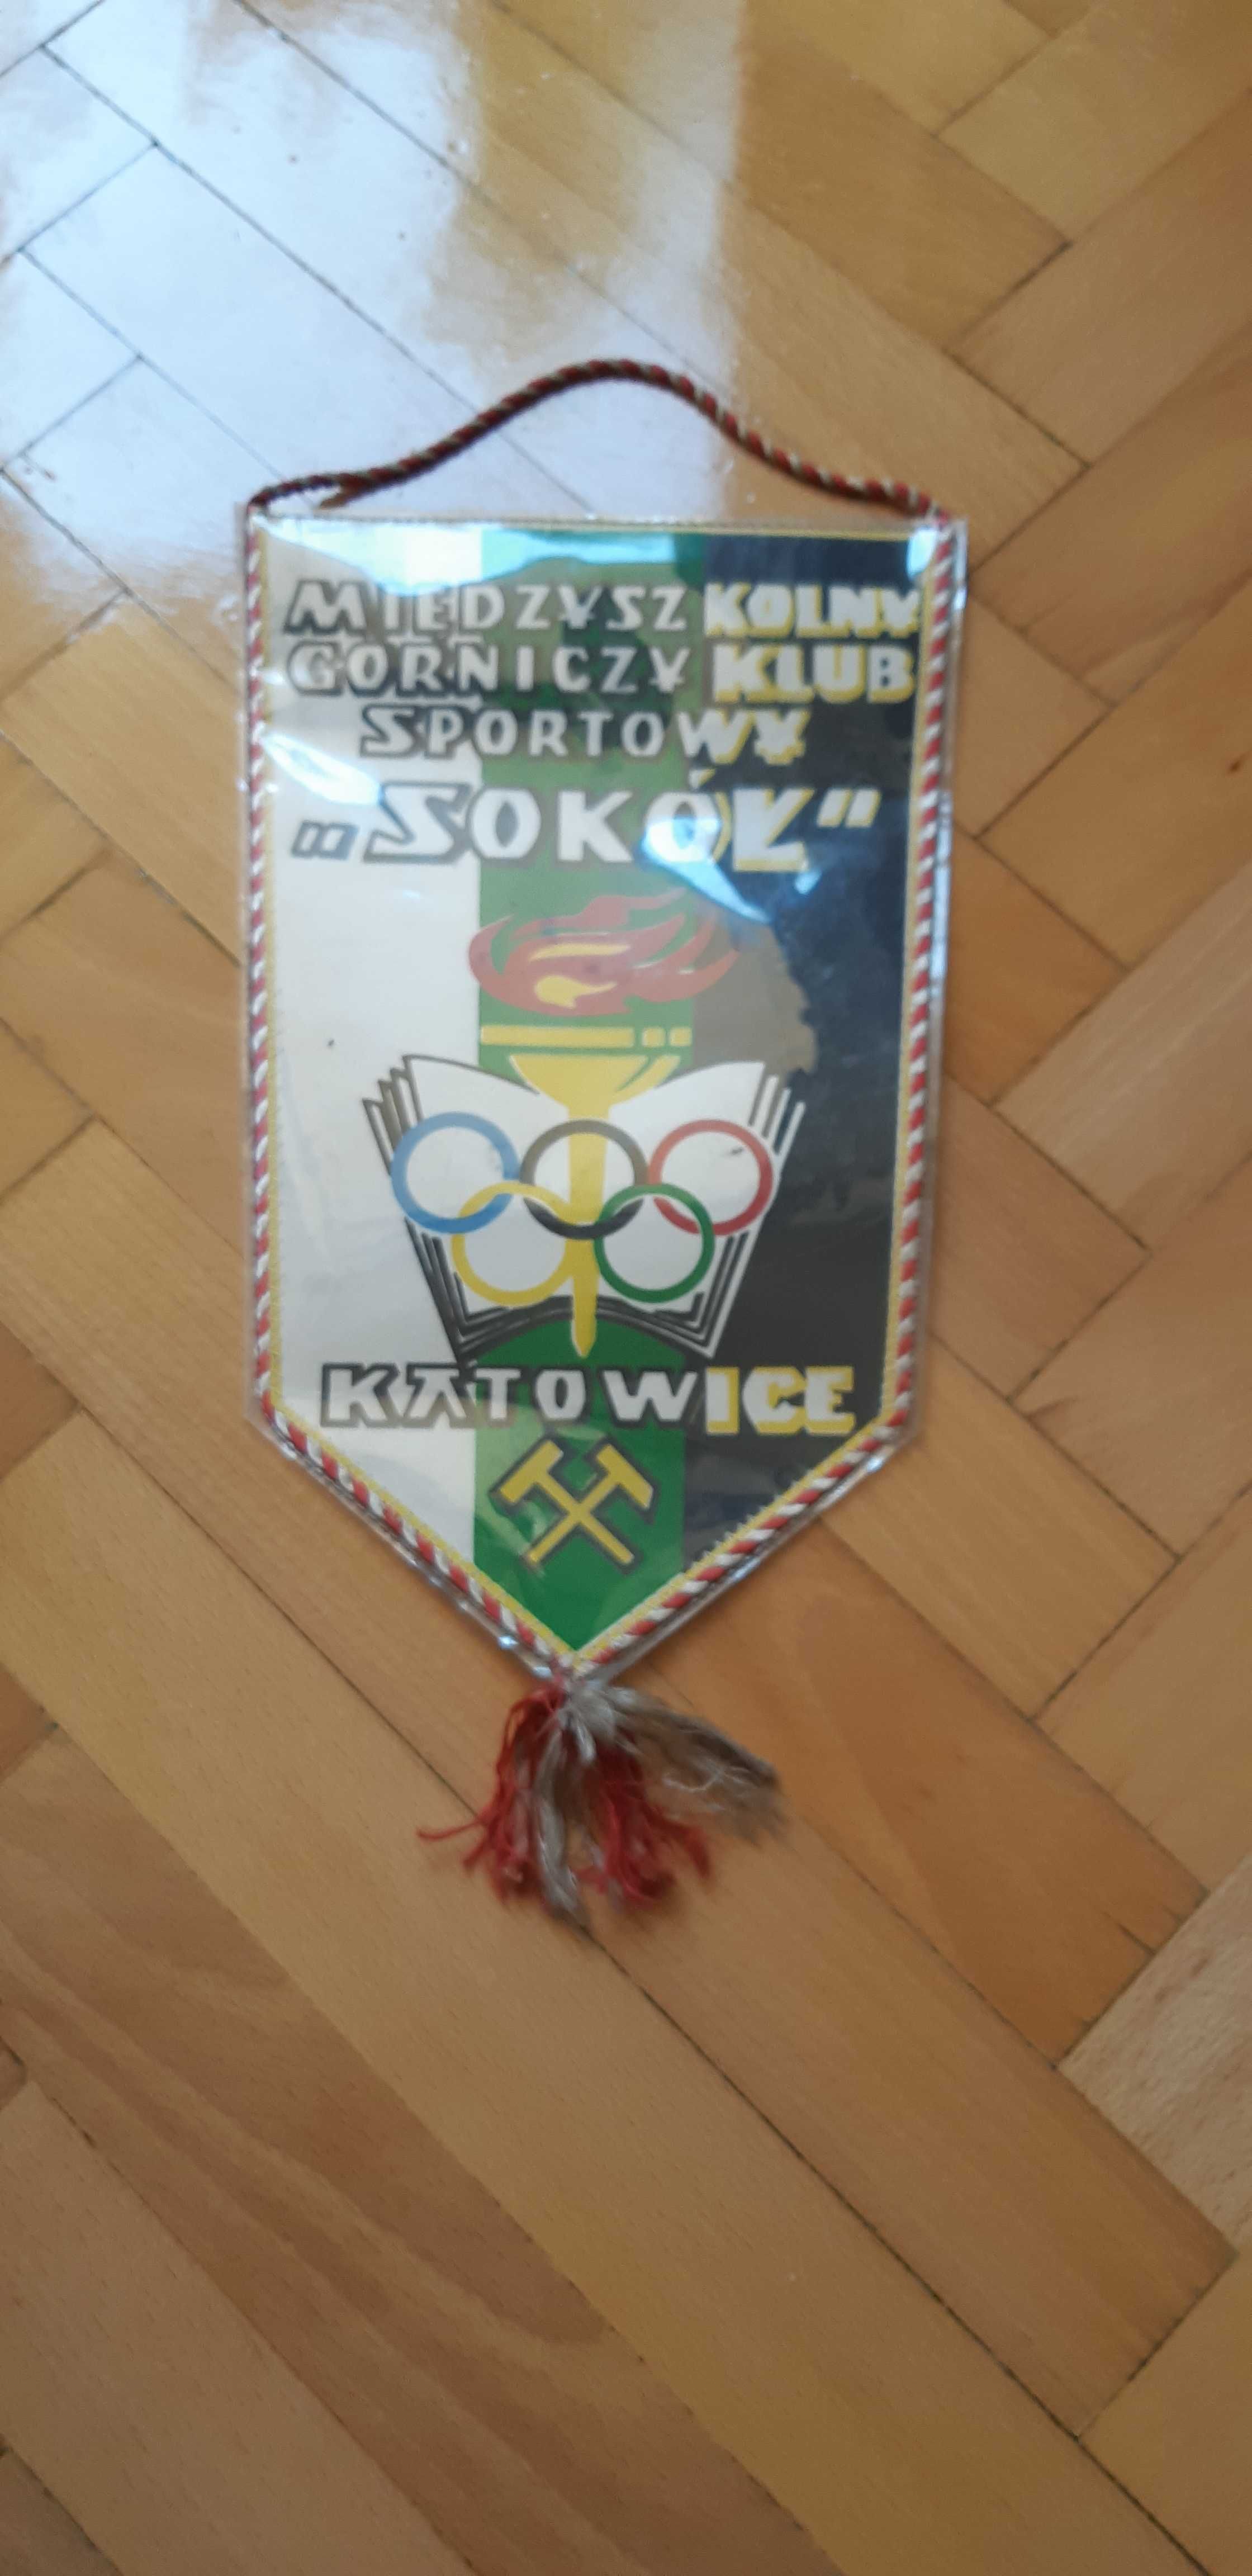 proporczyk Międzyszkolny Górniczy Klub Sportowy Sokół Katowice